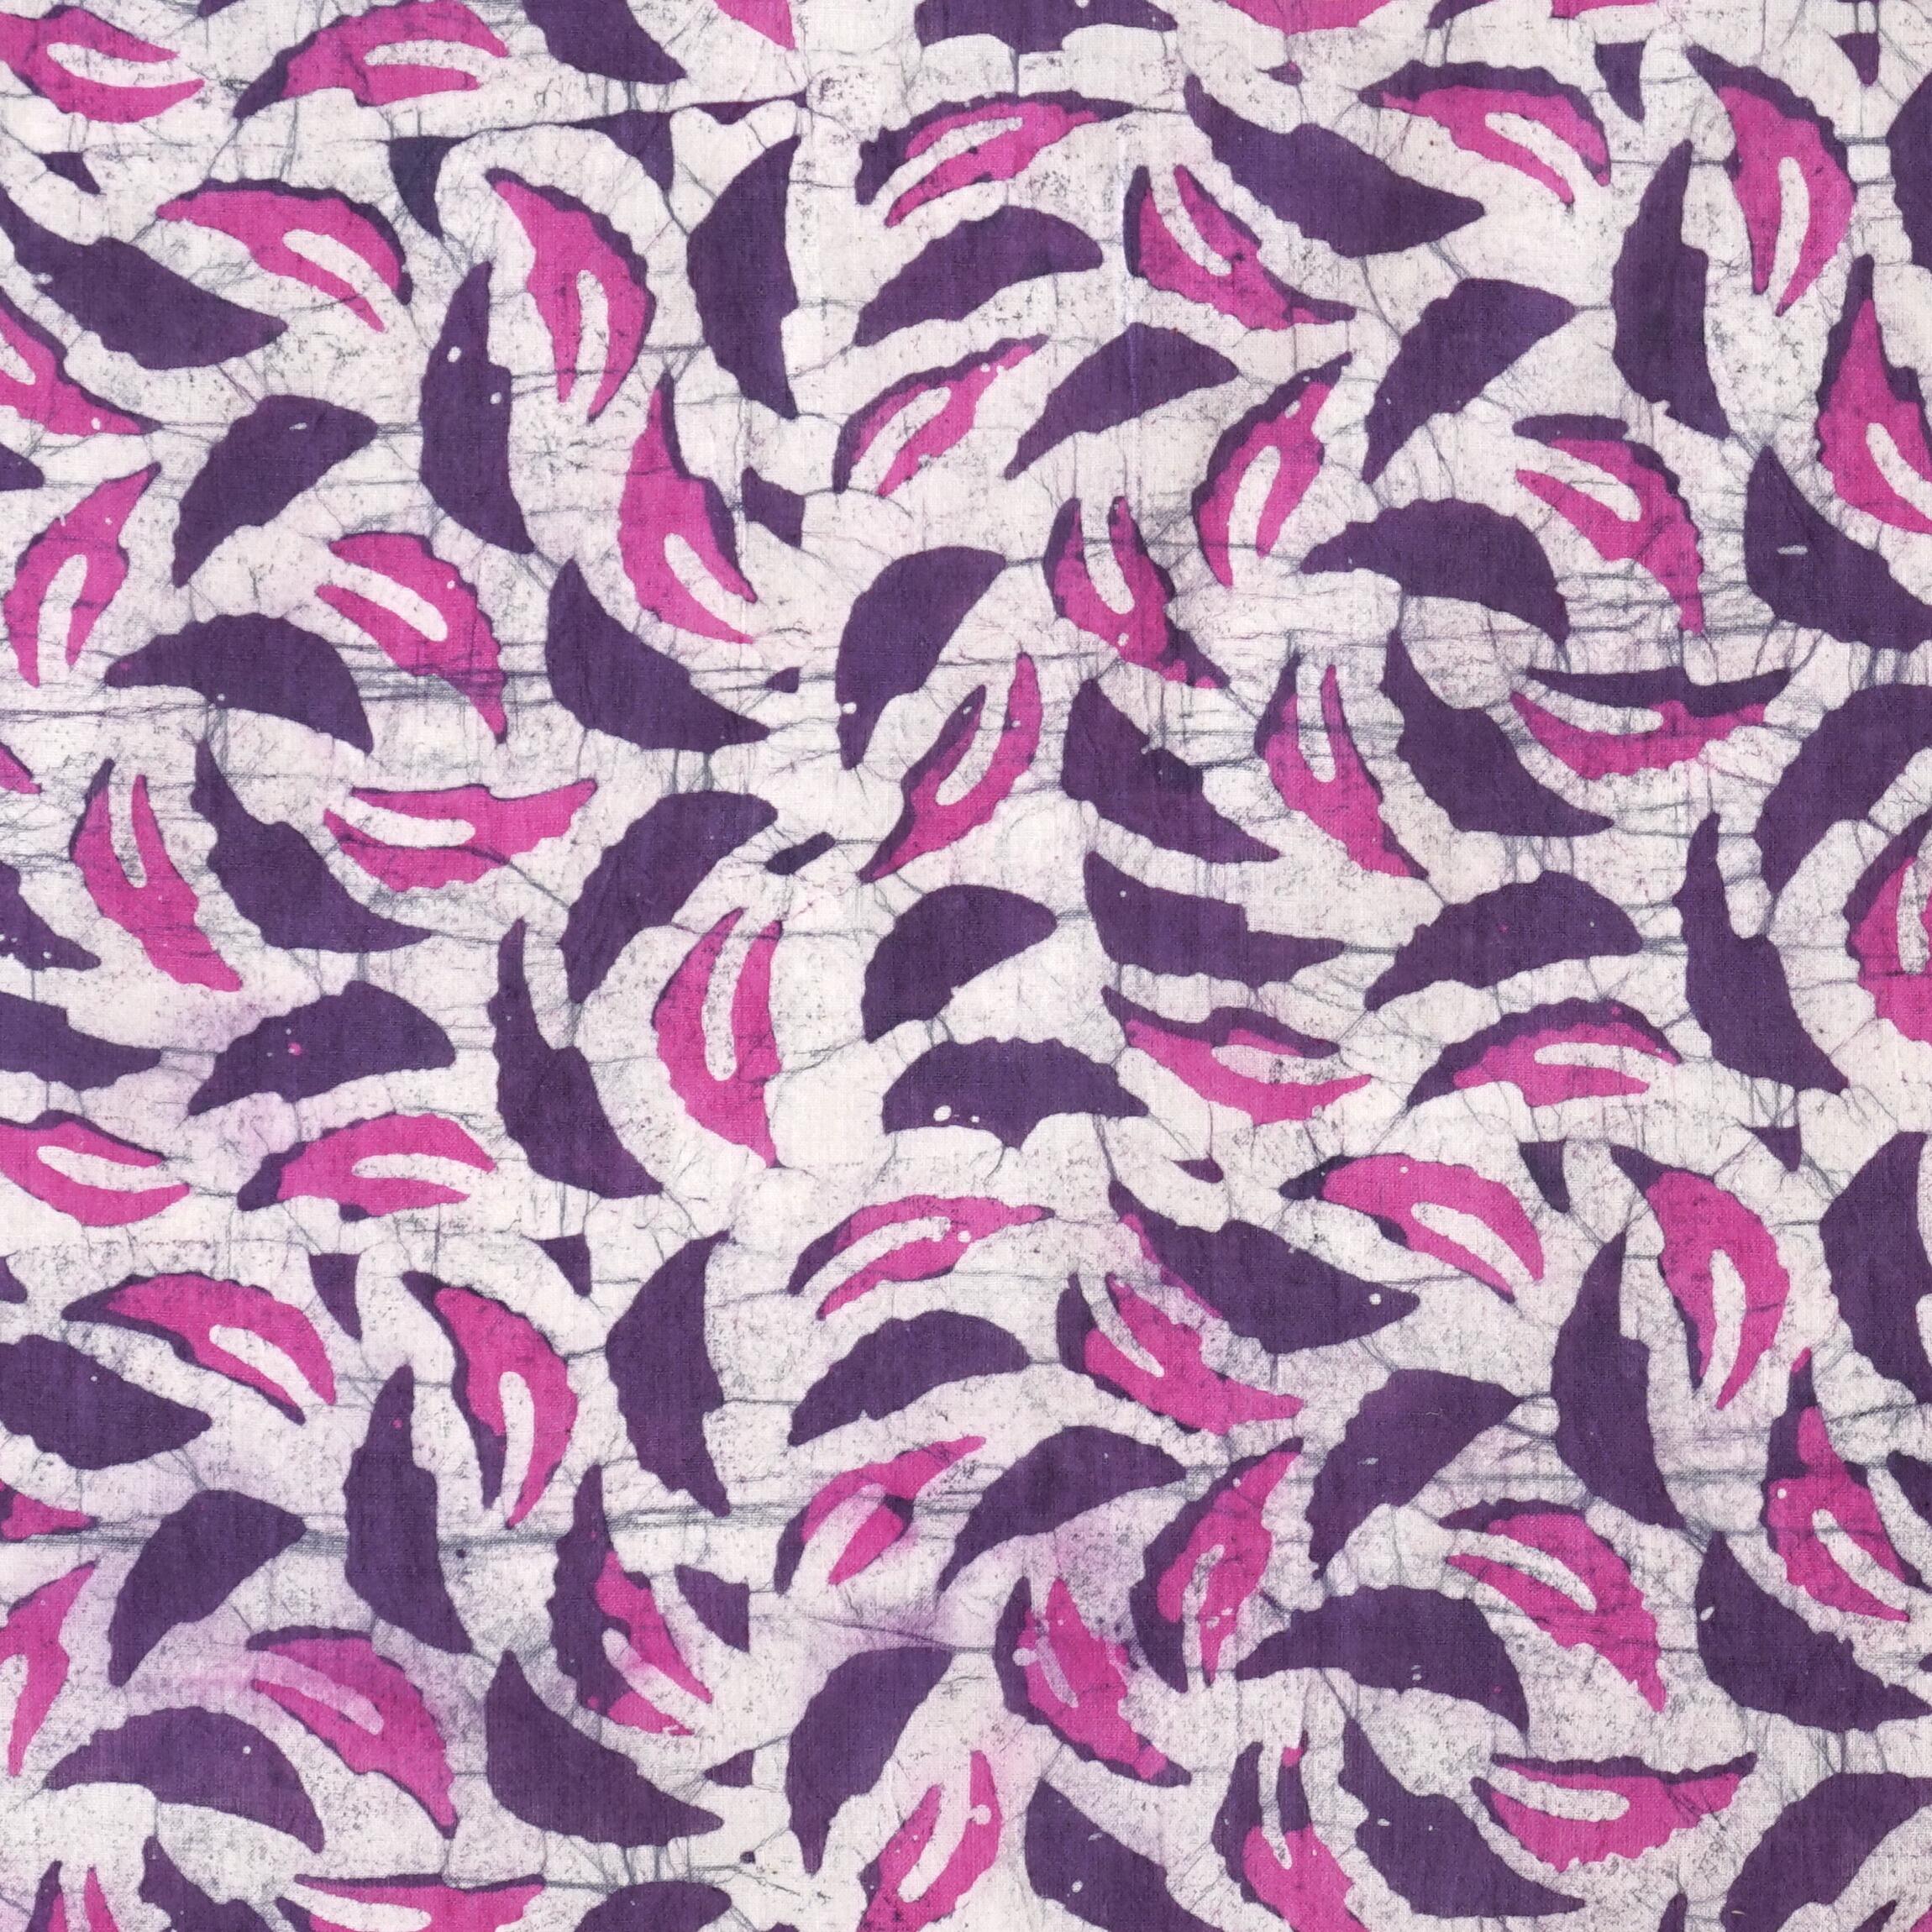 100% Block-Printed Batik Cotton Fabric From India - Purple Rain Motif - Flat